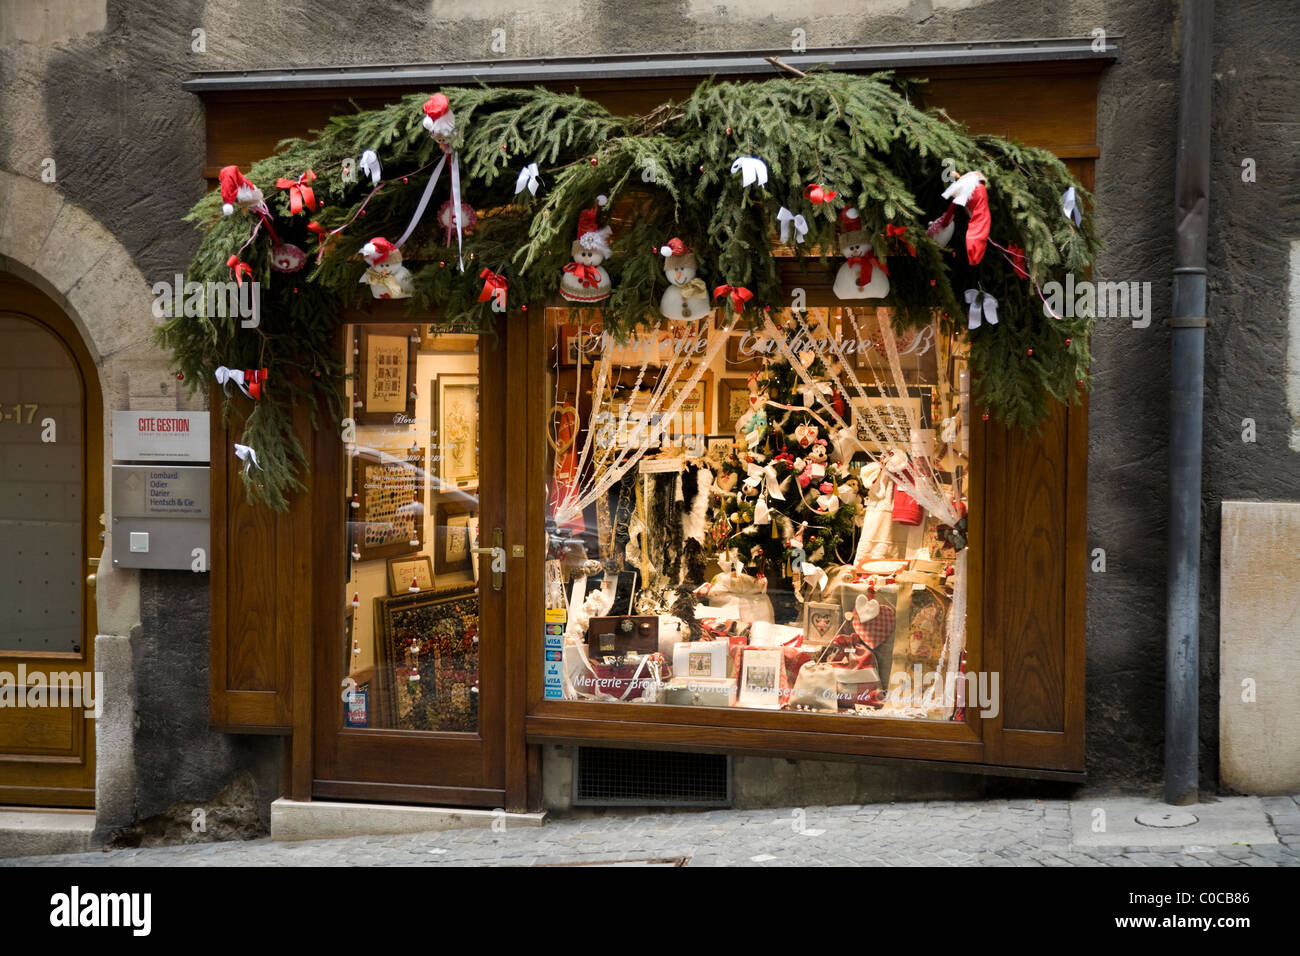 Geschäft Nähen / Stickerei / Handarbeiten / Kunst / Wandteppich Galerie mit  Weihnachtsschmuck in Genf / Genève, Schweiz Stockfotografie - Alamy